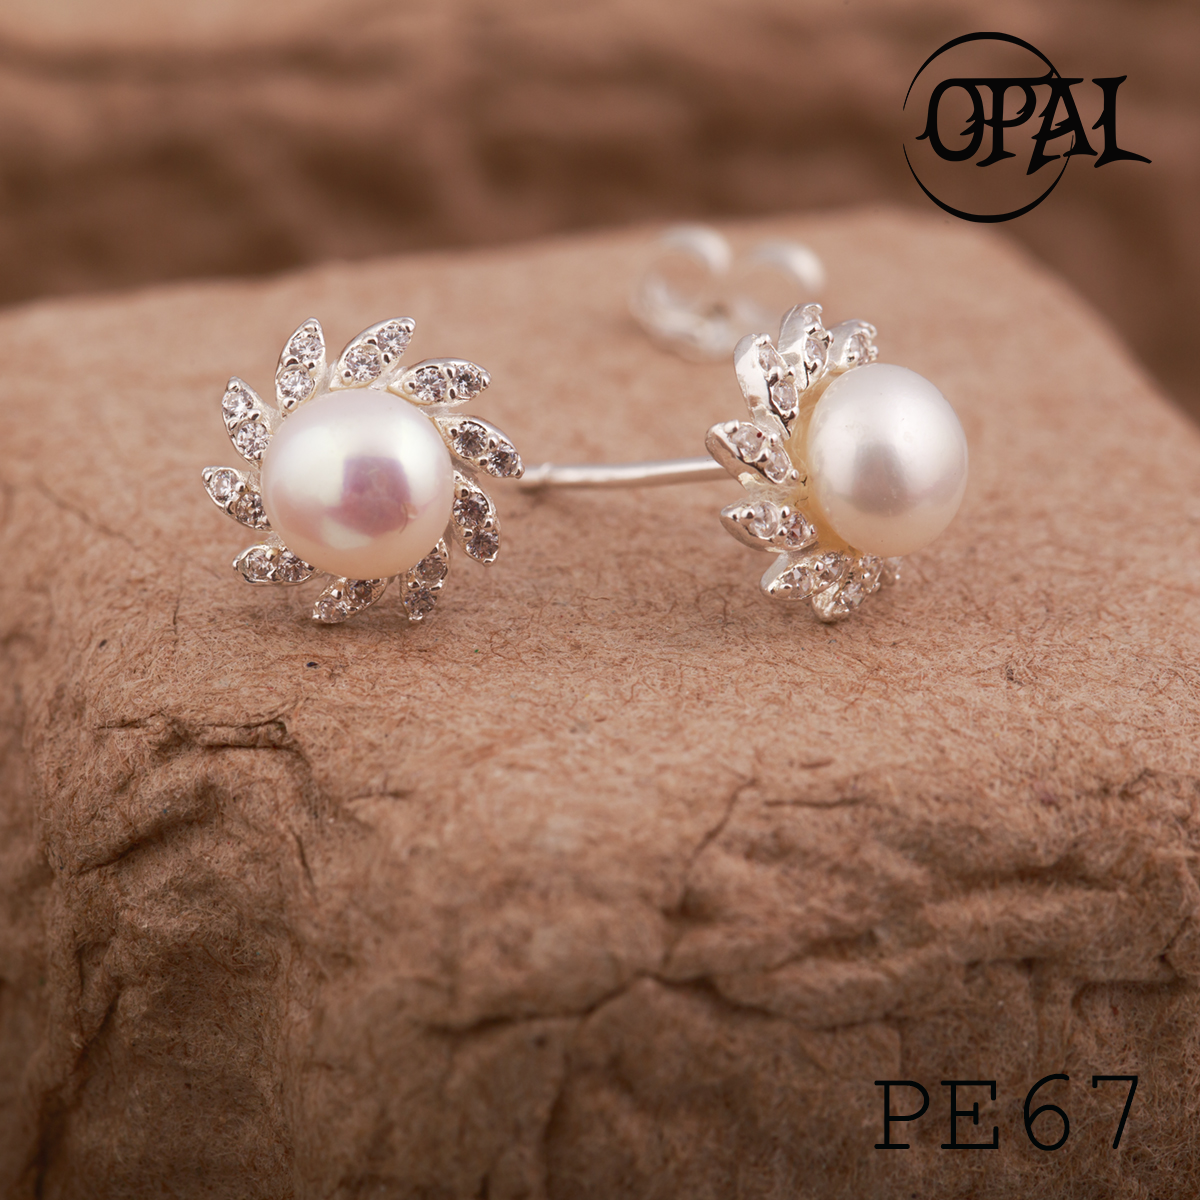  PE67 - Hoa tai bạc đính ngọc trai OPAL 